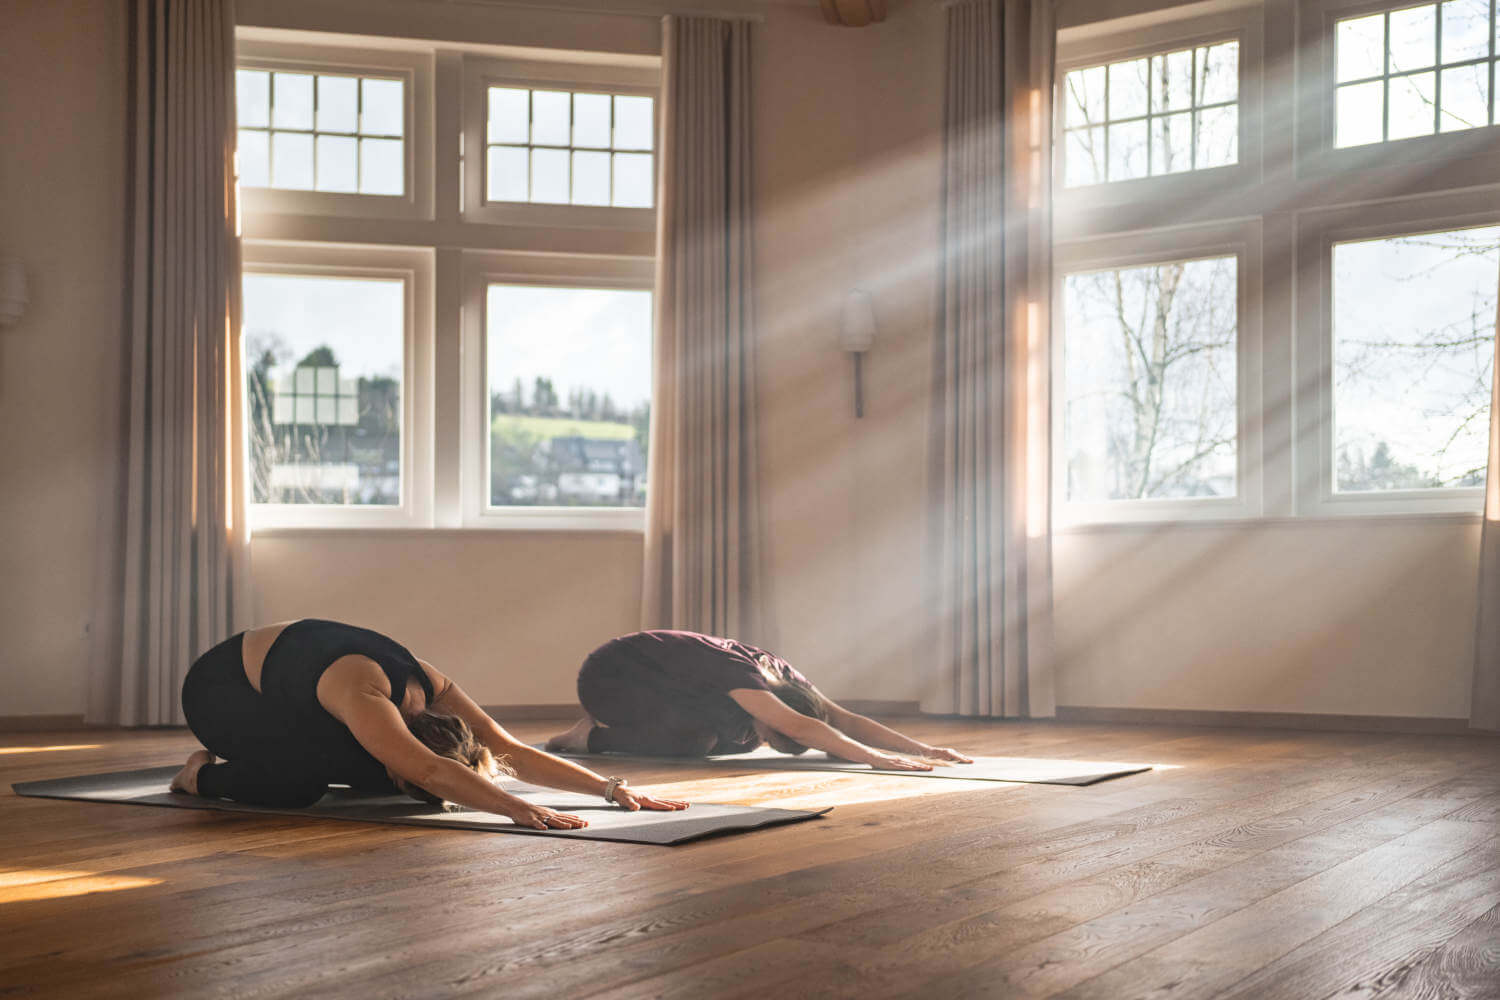 Zwei Frauen knien auf ihren Yogamatten und strecken ihre Arme nach vorn, das Sonnenlicht scheint in den Yogaraum